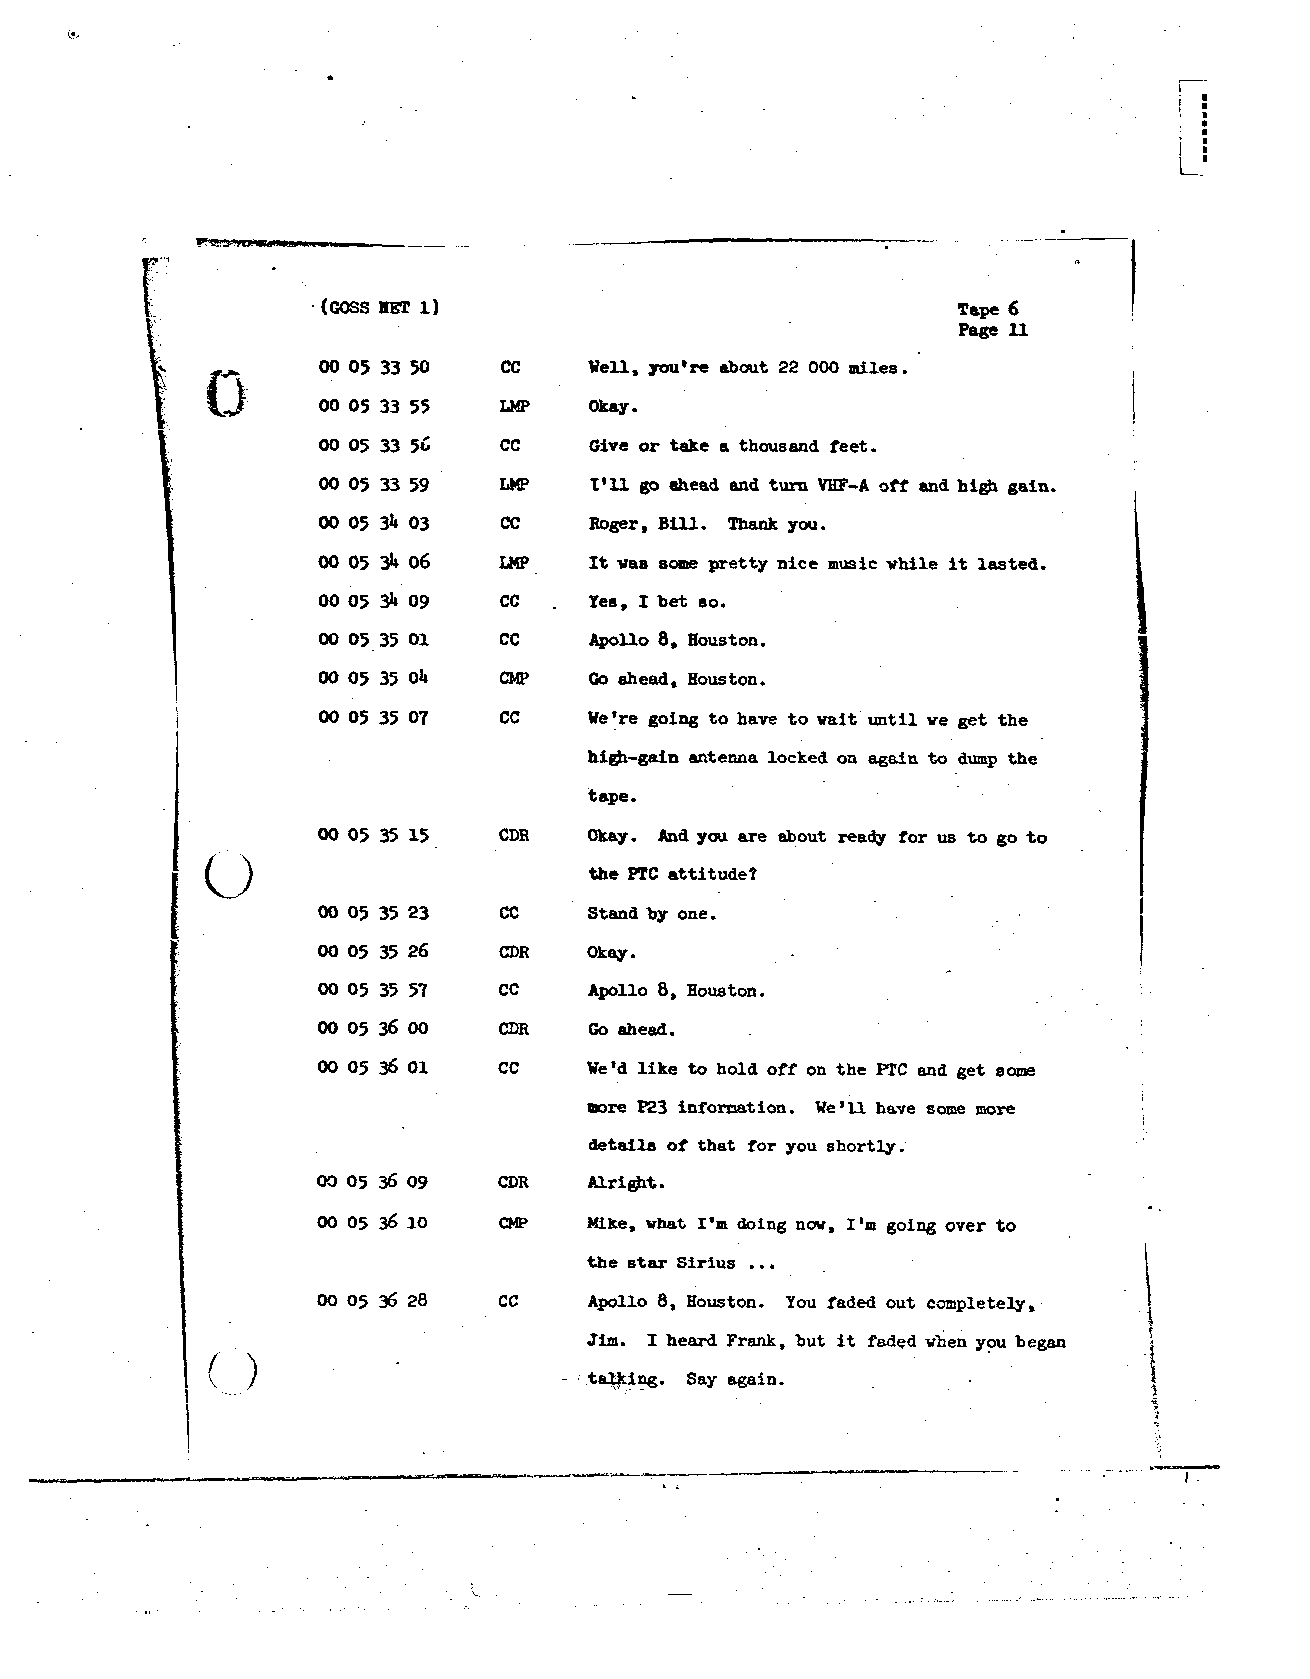 Page 57 of Apollo 8’s original transcript